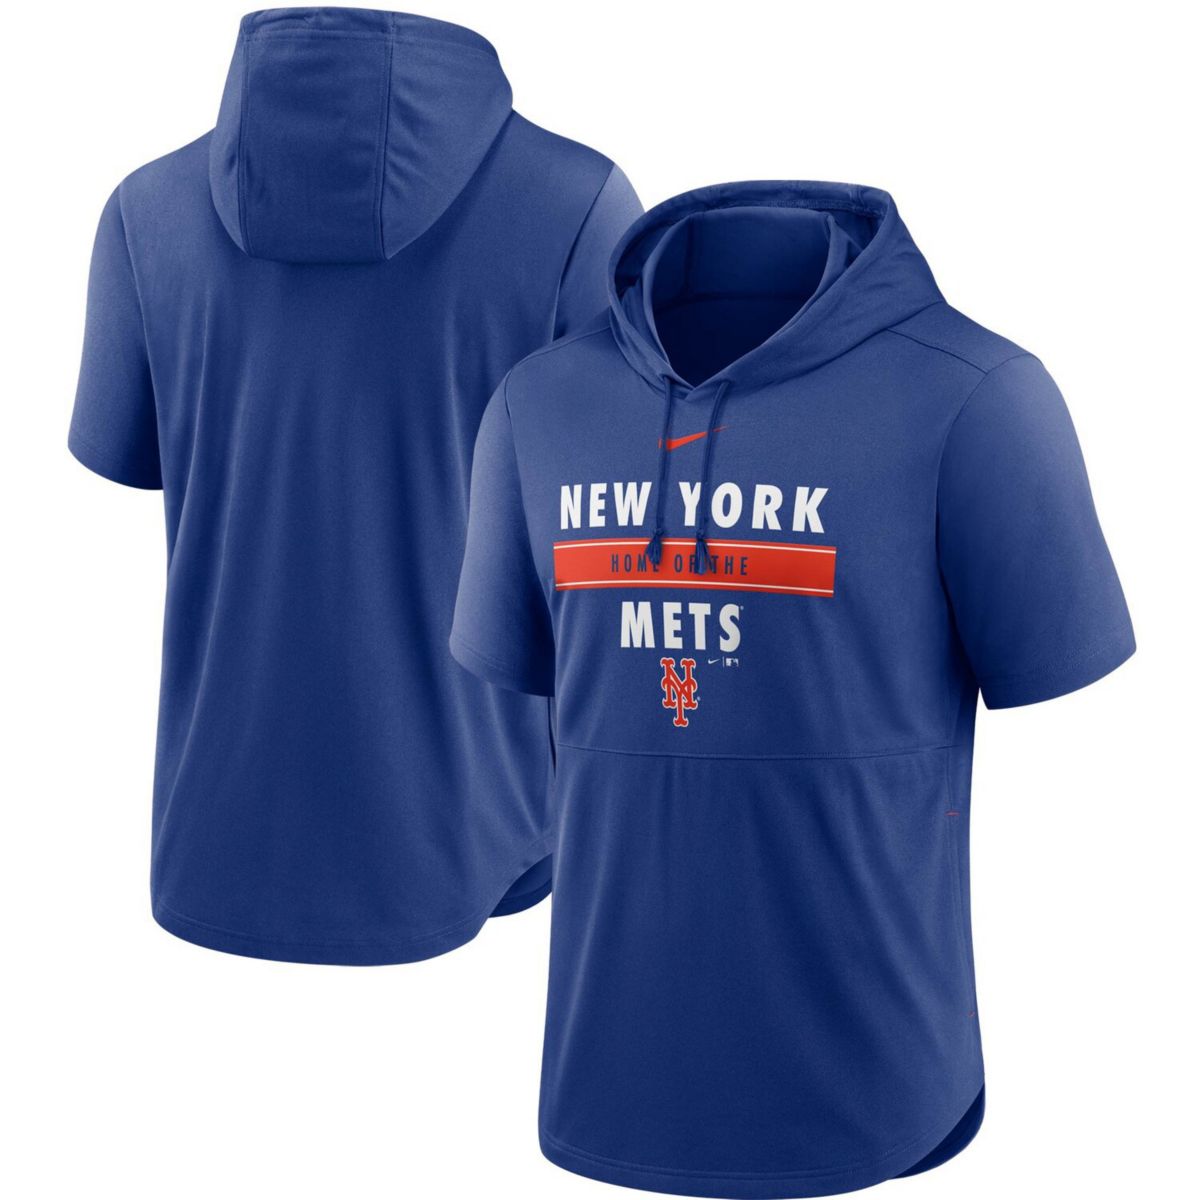 Men's Nike Royal New York Mets Home Team Short Sleeve Hoodie Top Nike